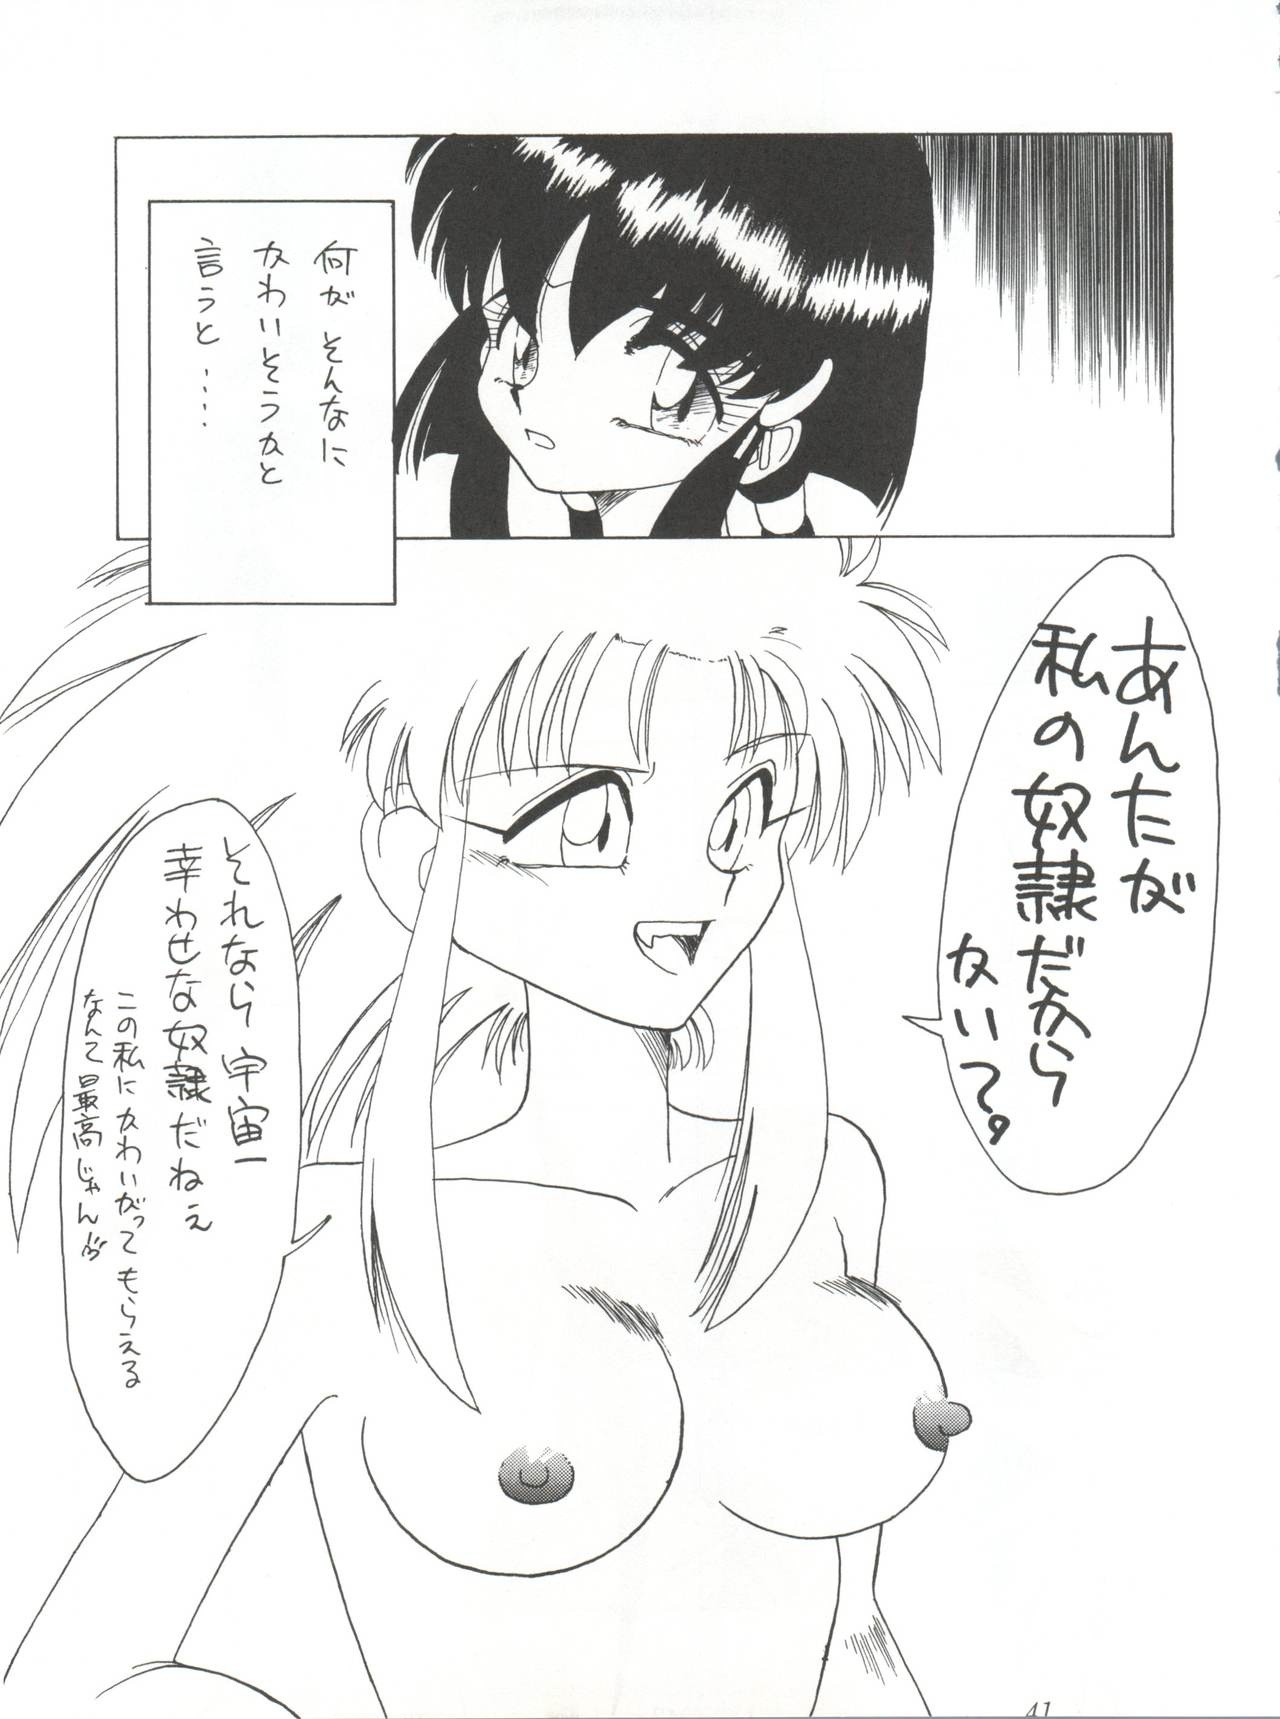 Yuuki and Yume and Mukubo's Japanese hentai manga picture 36